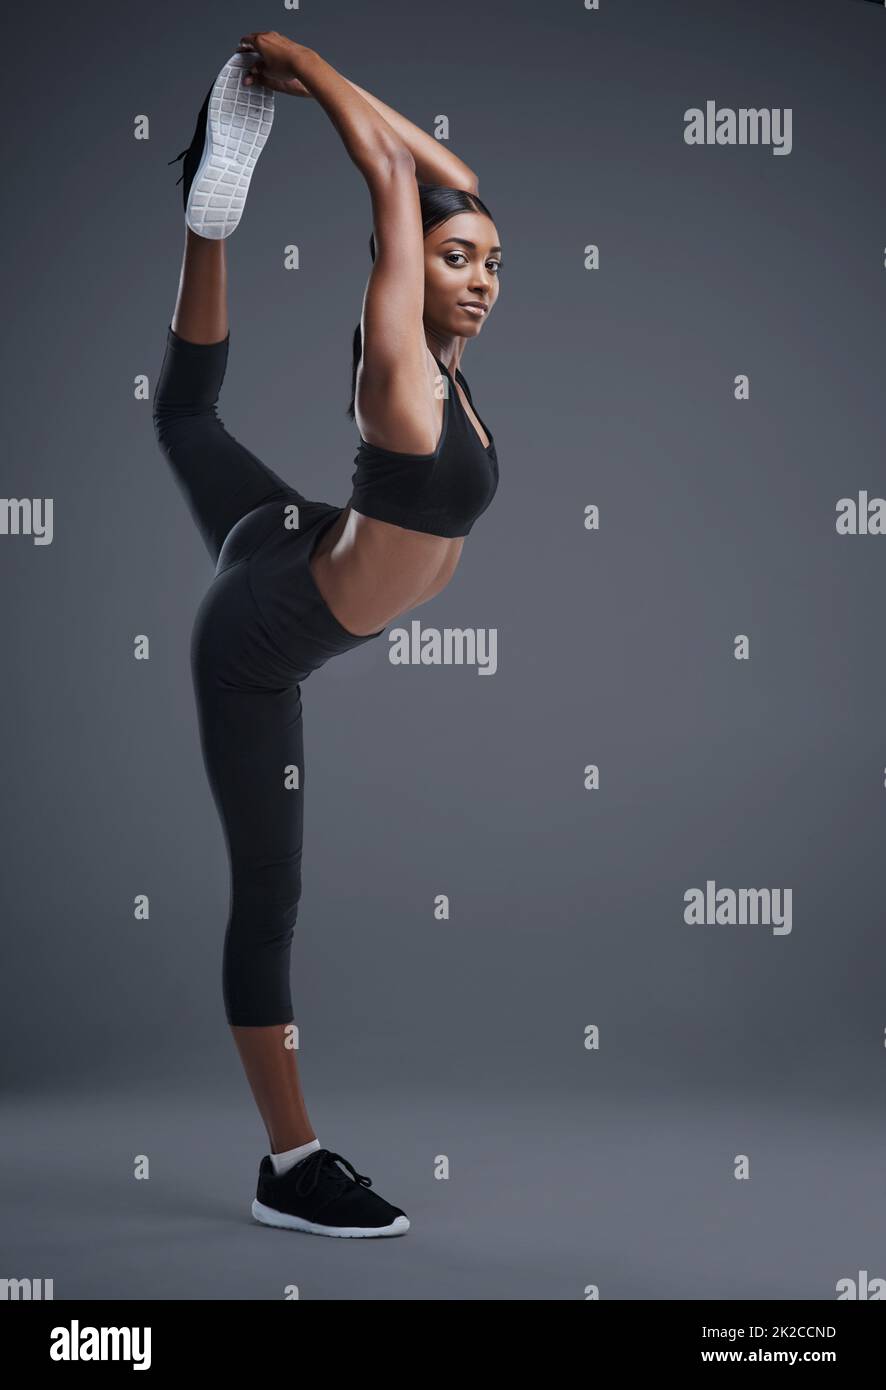 Aussi féroce qu'flexible. Portrait studio d'une jeune femme sportive qui s'étend sur un fond gris. Banque D'Images